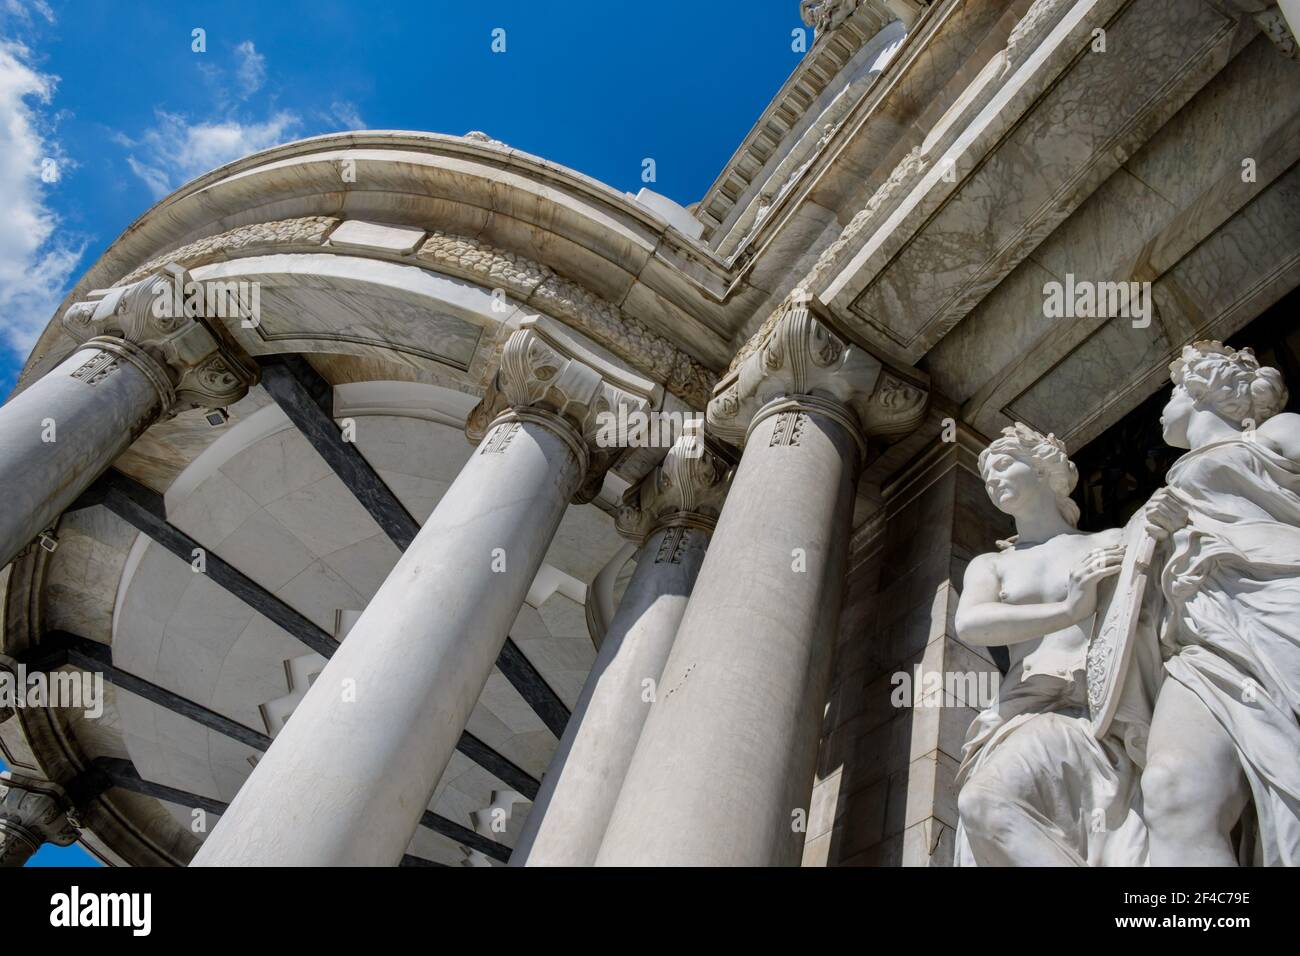 Über dem Eingang des Palacio de Bellas Artes (Palast der Schönen Künste) in Mexiko-Stadt, Mexiko, erhebt sich eine Statut. Stockfoto